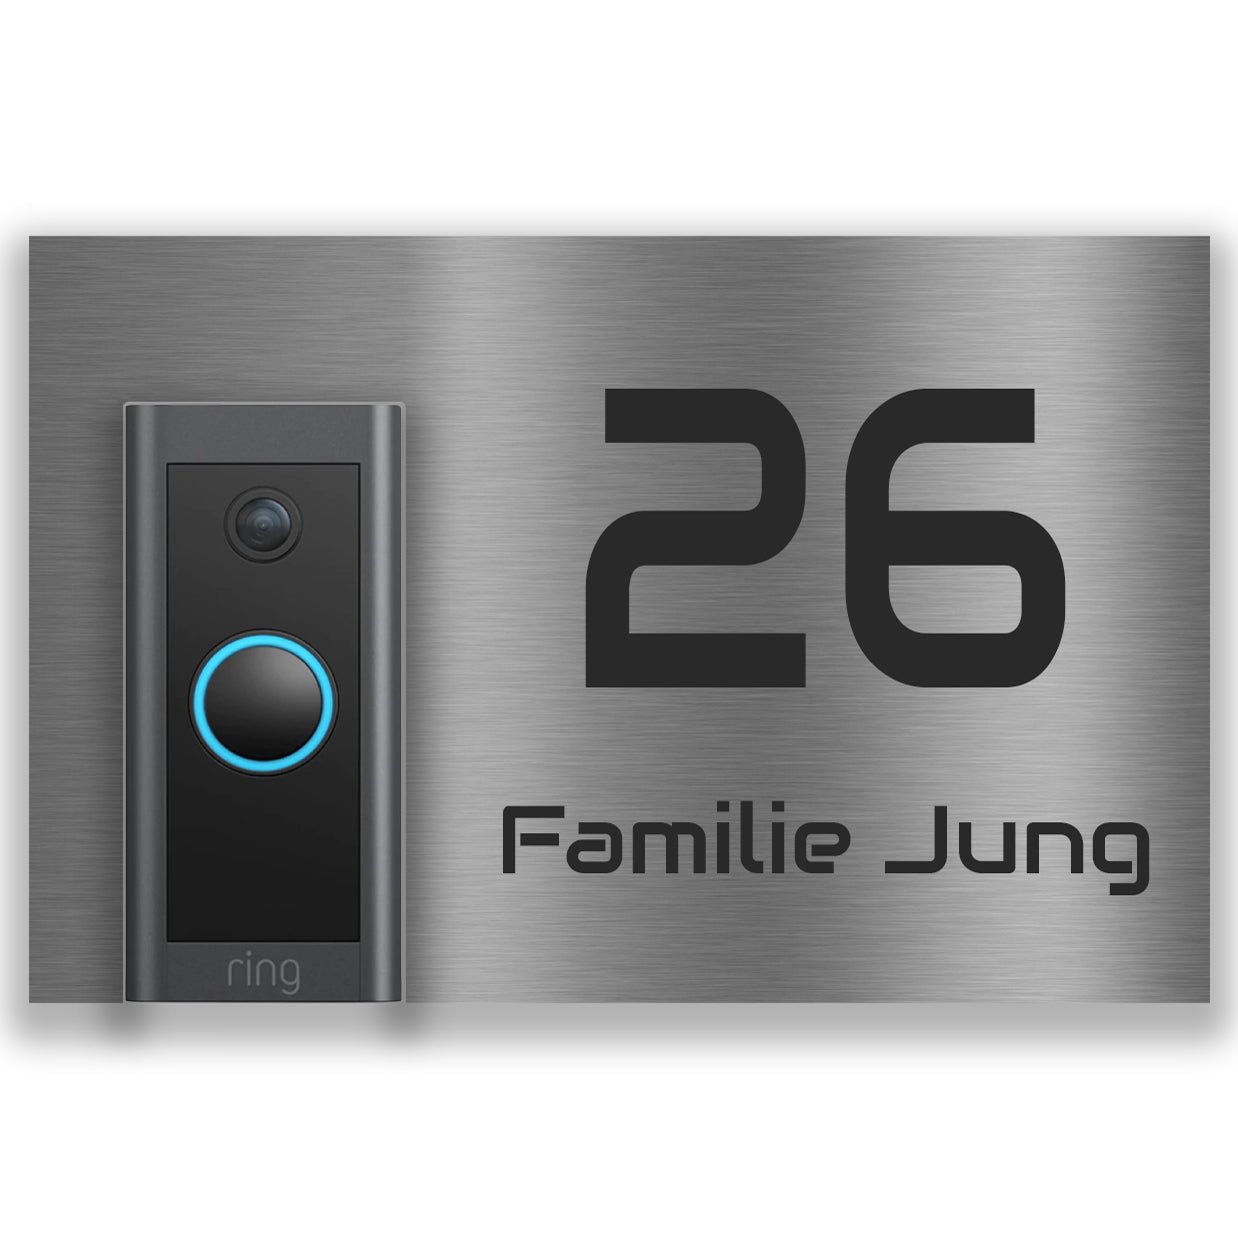 Modernes Edelstahl Türschild für  Video Ring Doorbell Wired, individuell personalisierbar